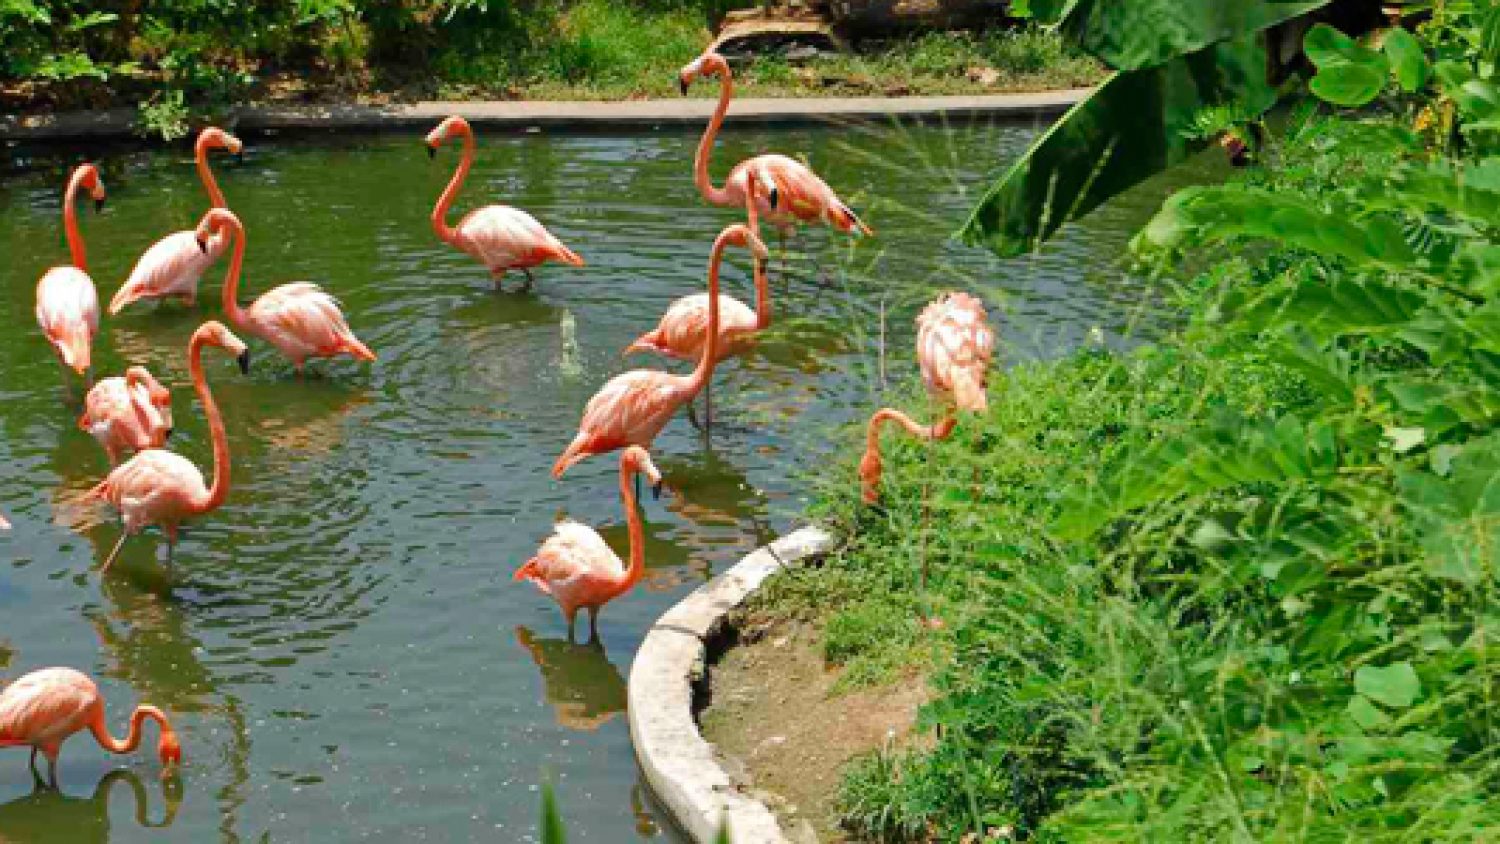 Puerto Vallarta Zoo Overview